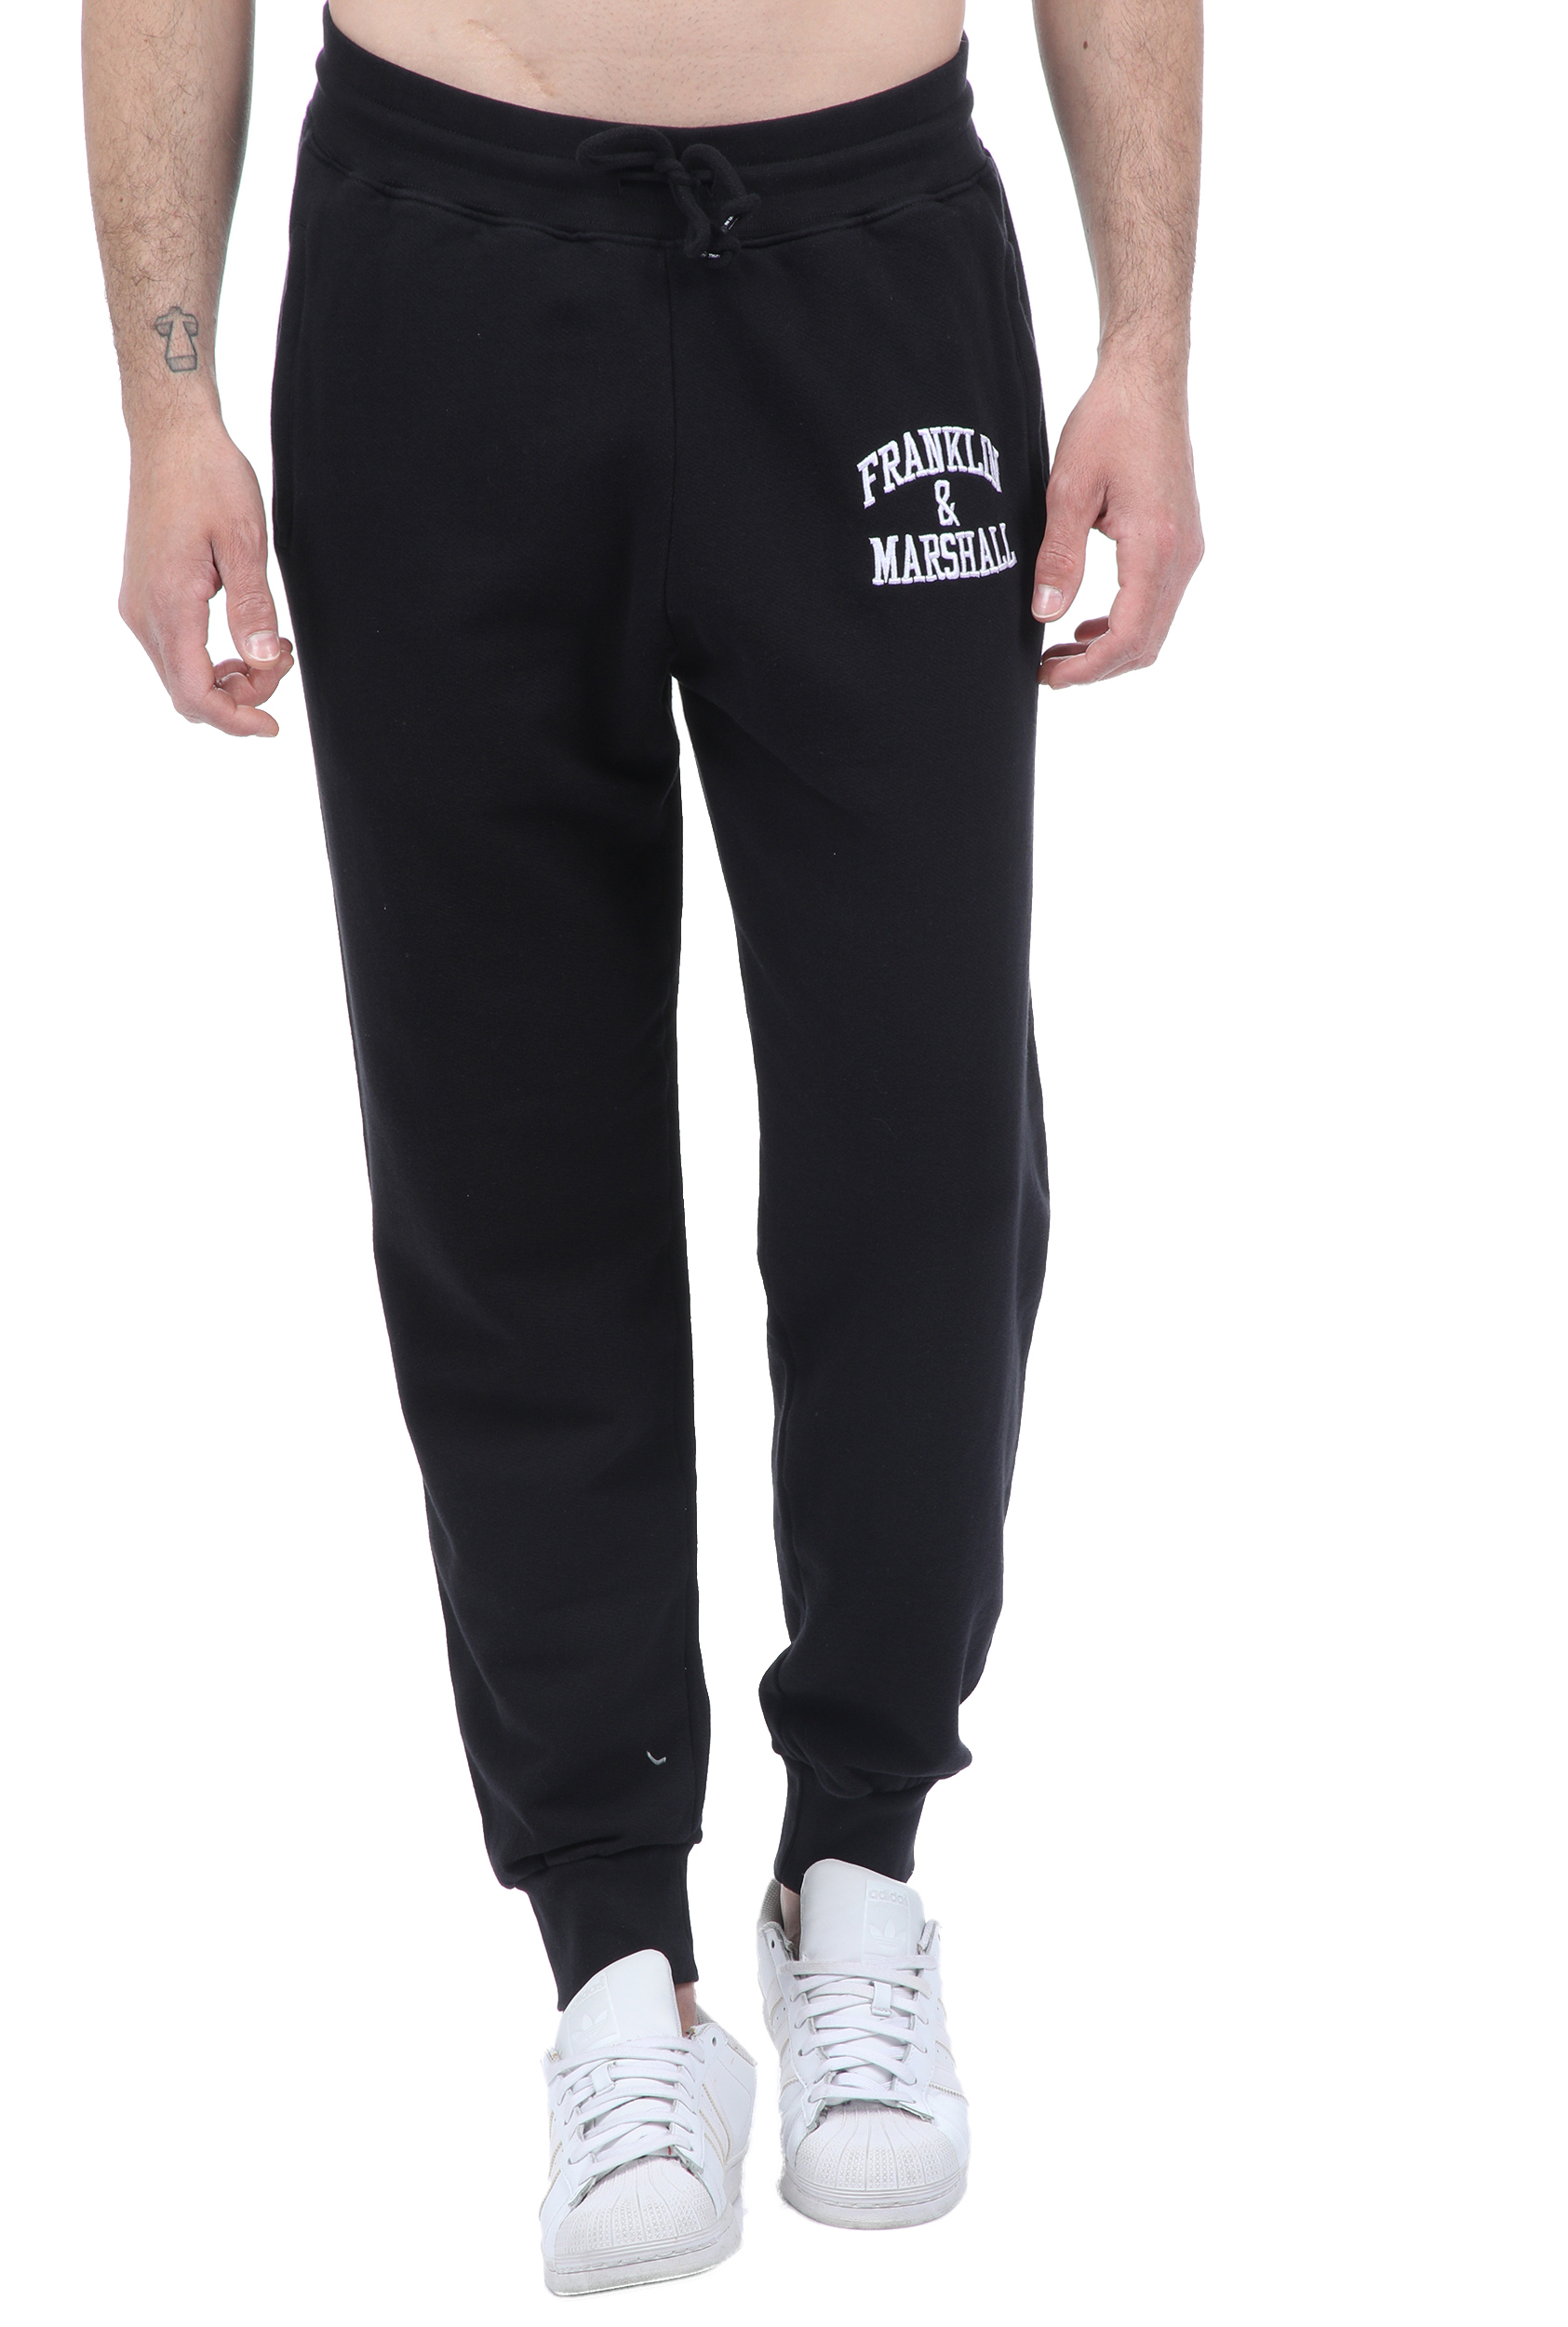 Ανδρικά/Ρούχα/Αθλητικά/Φόρμες FRANKLIN & MARSHALL - Ανδρικό παντελόνι φόρμας FRANKLIN & MARSHALL μαύρο